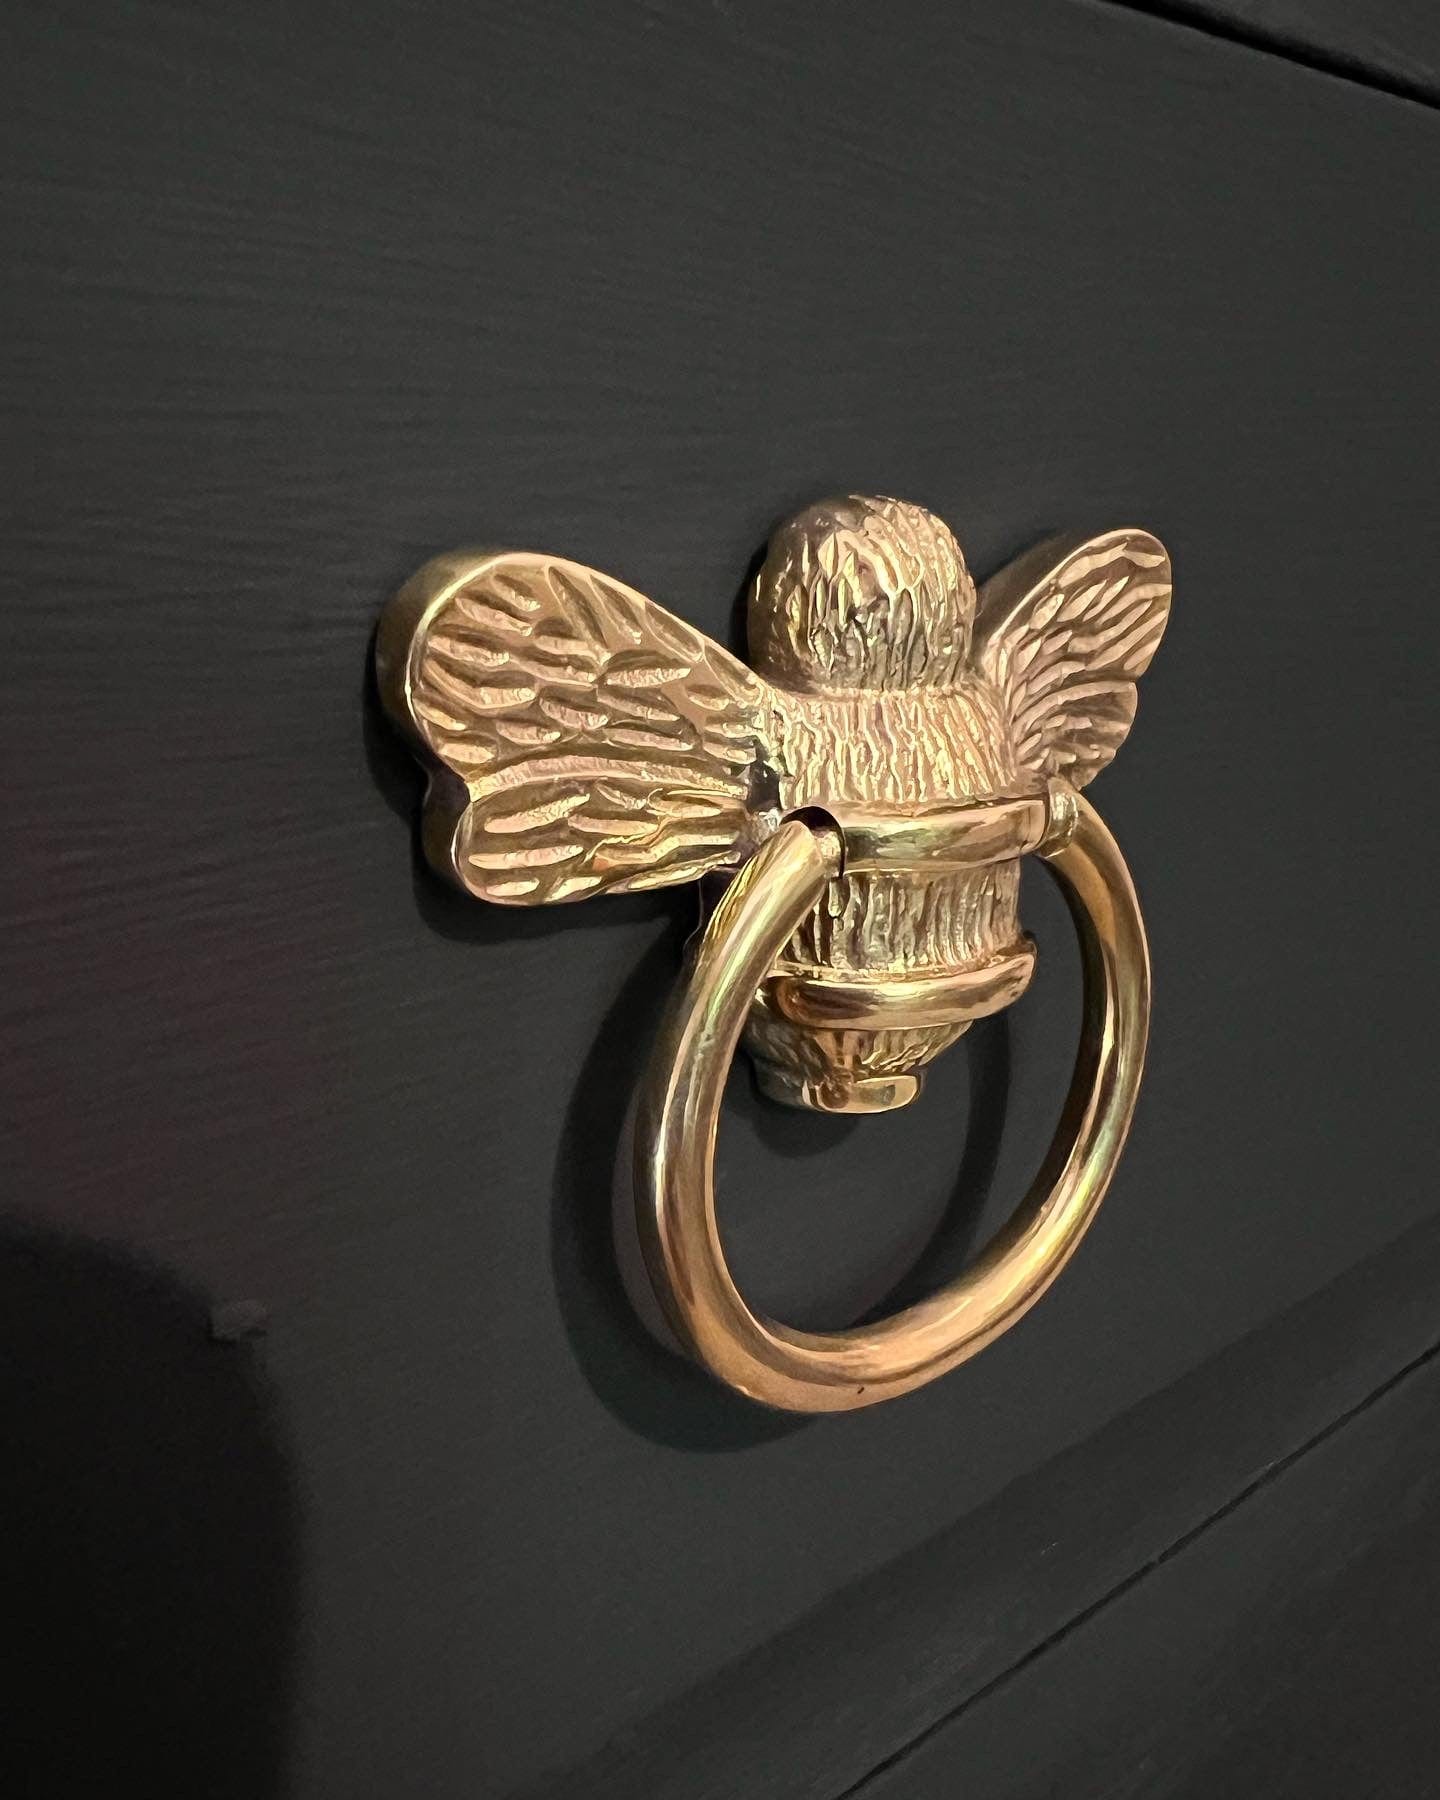 Brass Antique Door Handle, Door Handles for Main Door, Handle Head Design 1  Pcs -  Norway